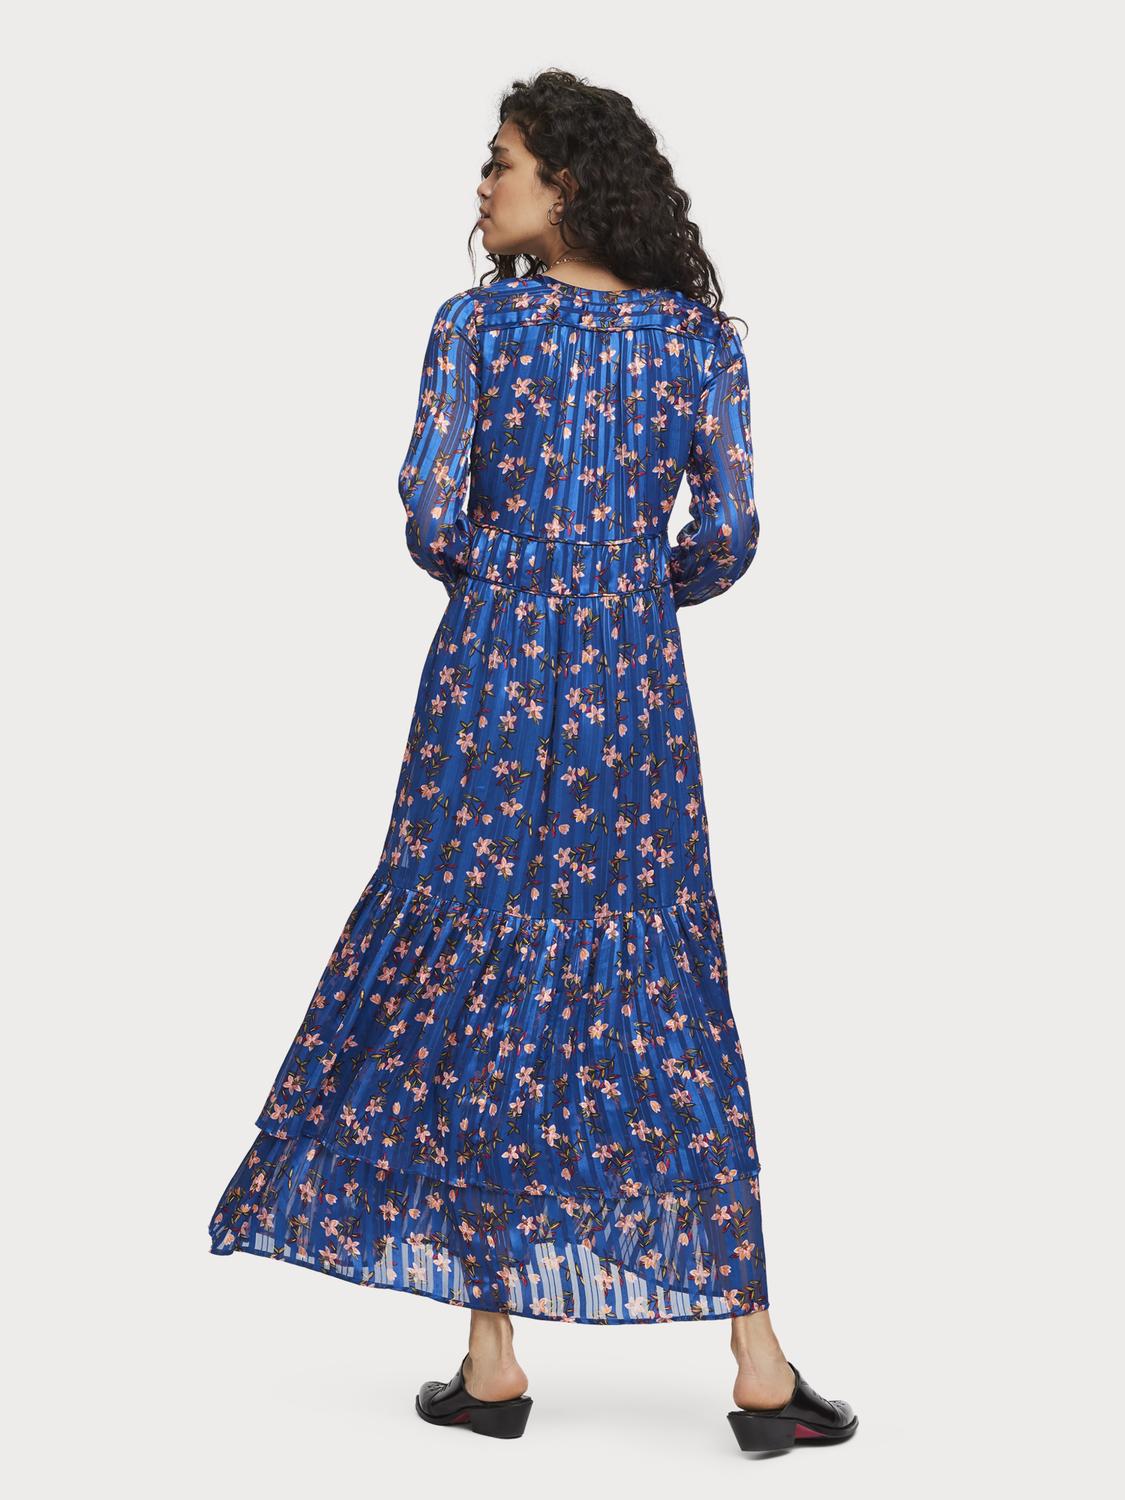 Scotch & Soda Floral Print Chiffon Dress in Blue | Lyst